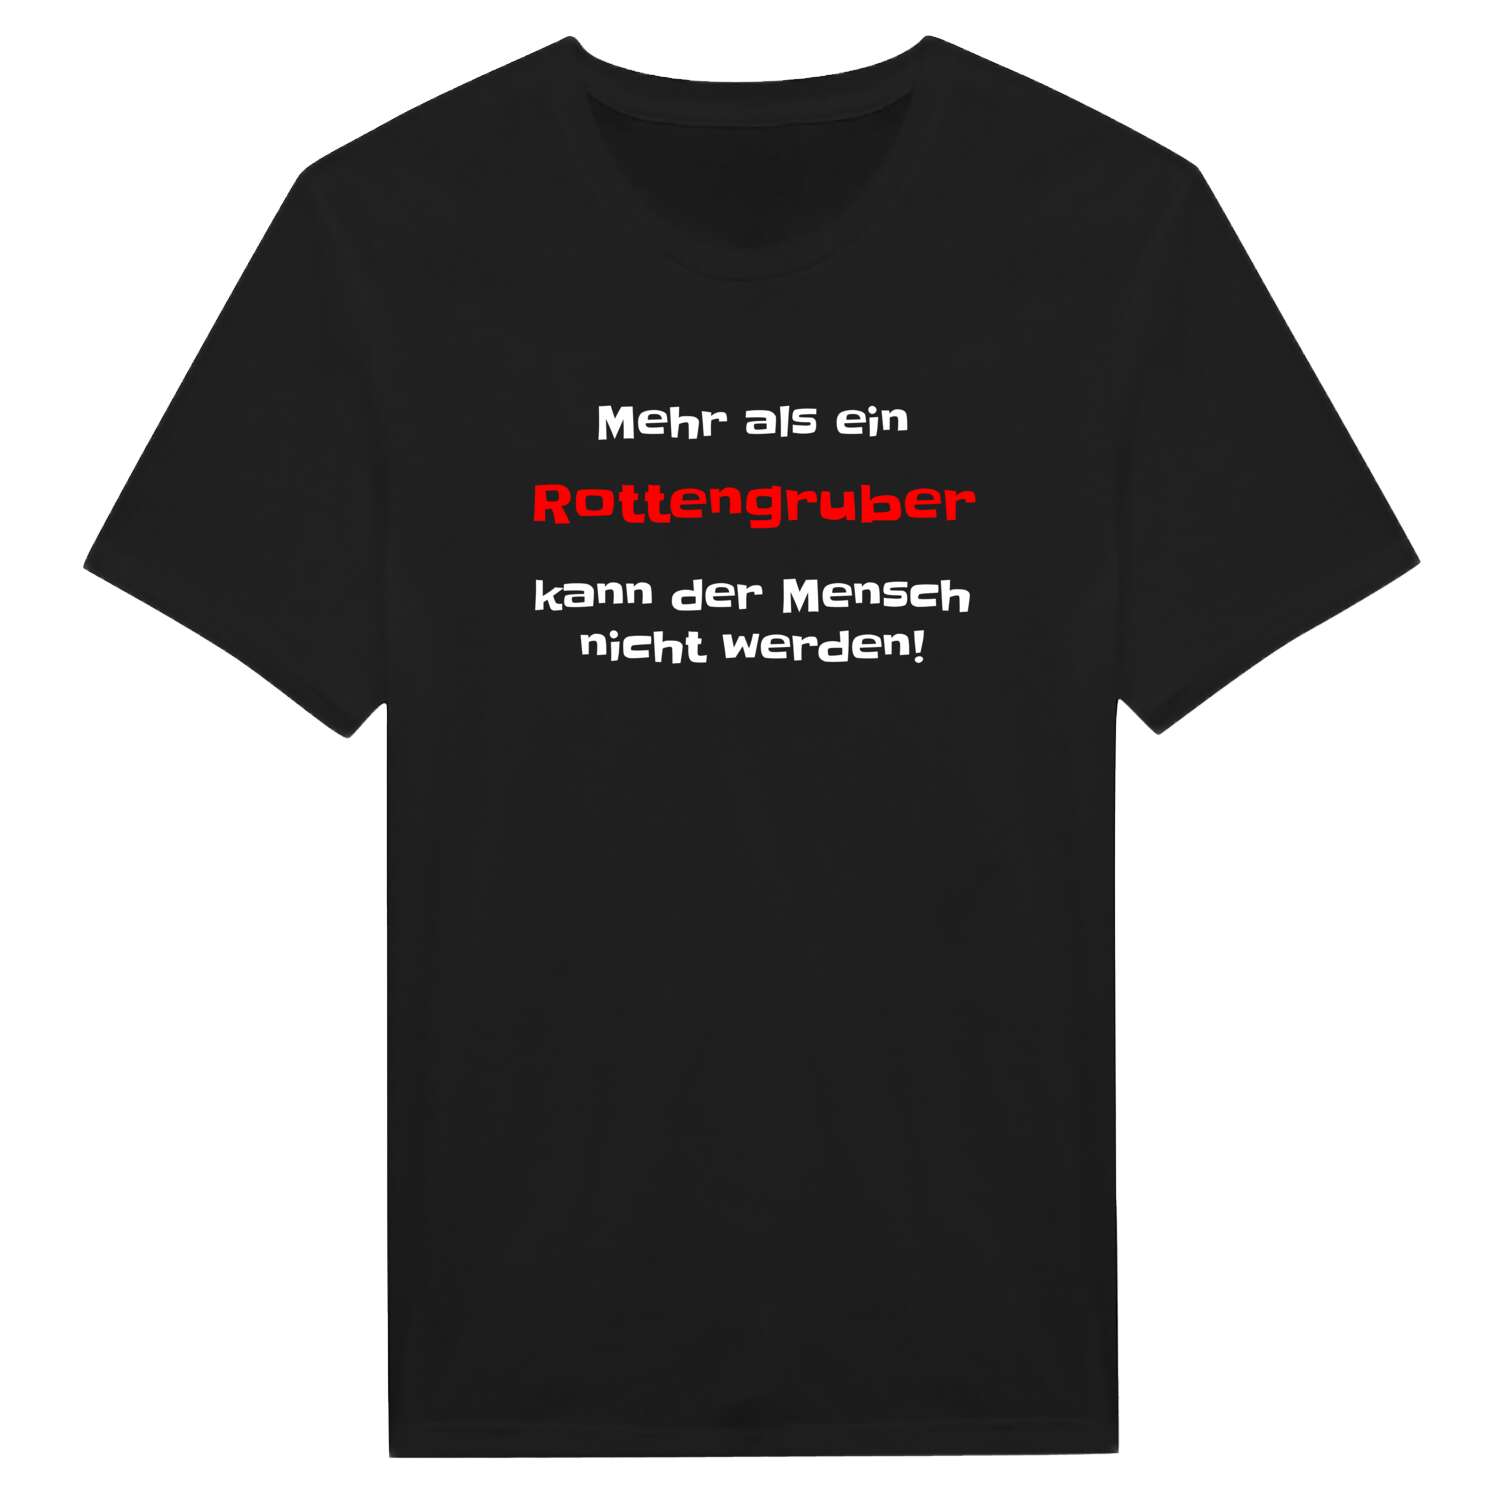 Rottengrub T-Shirt »Mehr als ein«